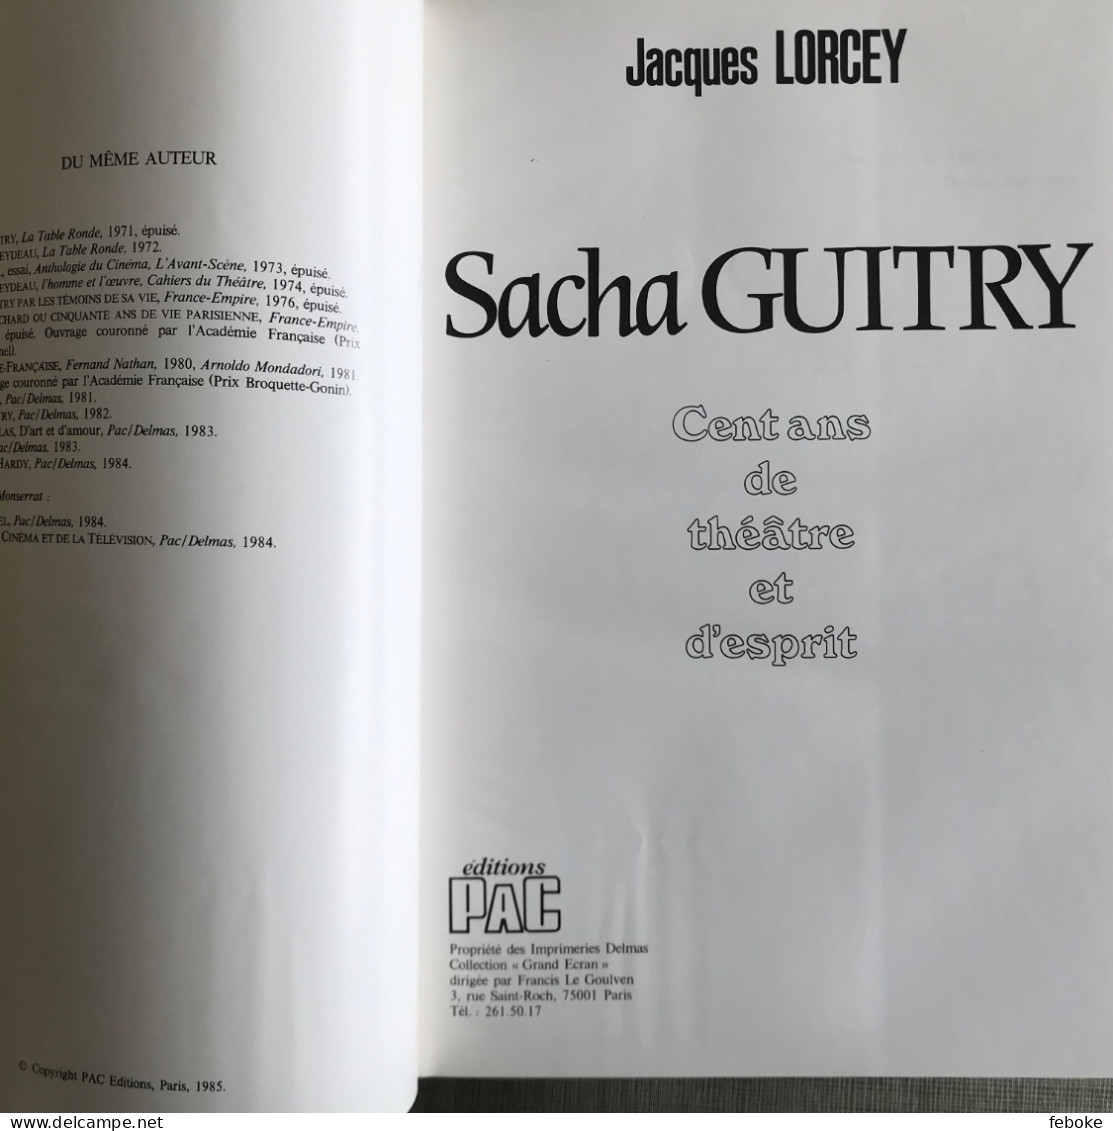 SACHA GUITRY 100 ANS DE THEATRE ET D'ESPRIT DE JACQUES LORCEY PAC EDITIONS PARIS 1985 - Autori Francesi